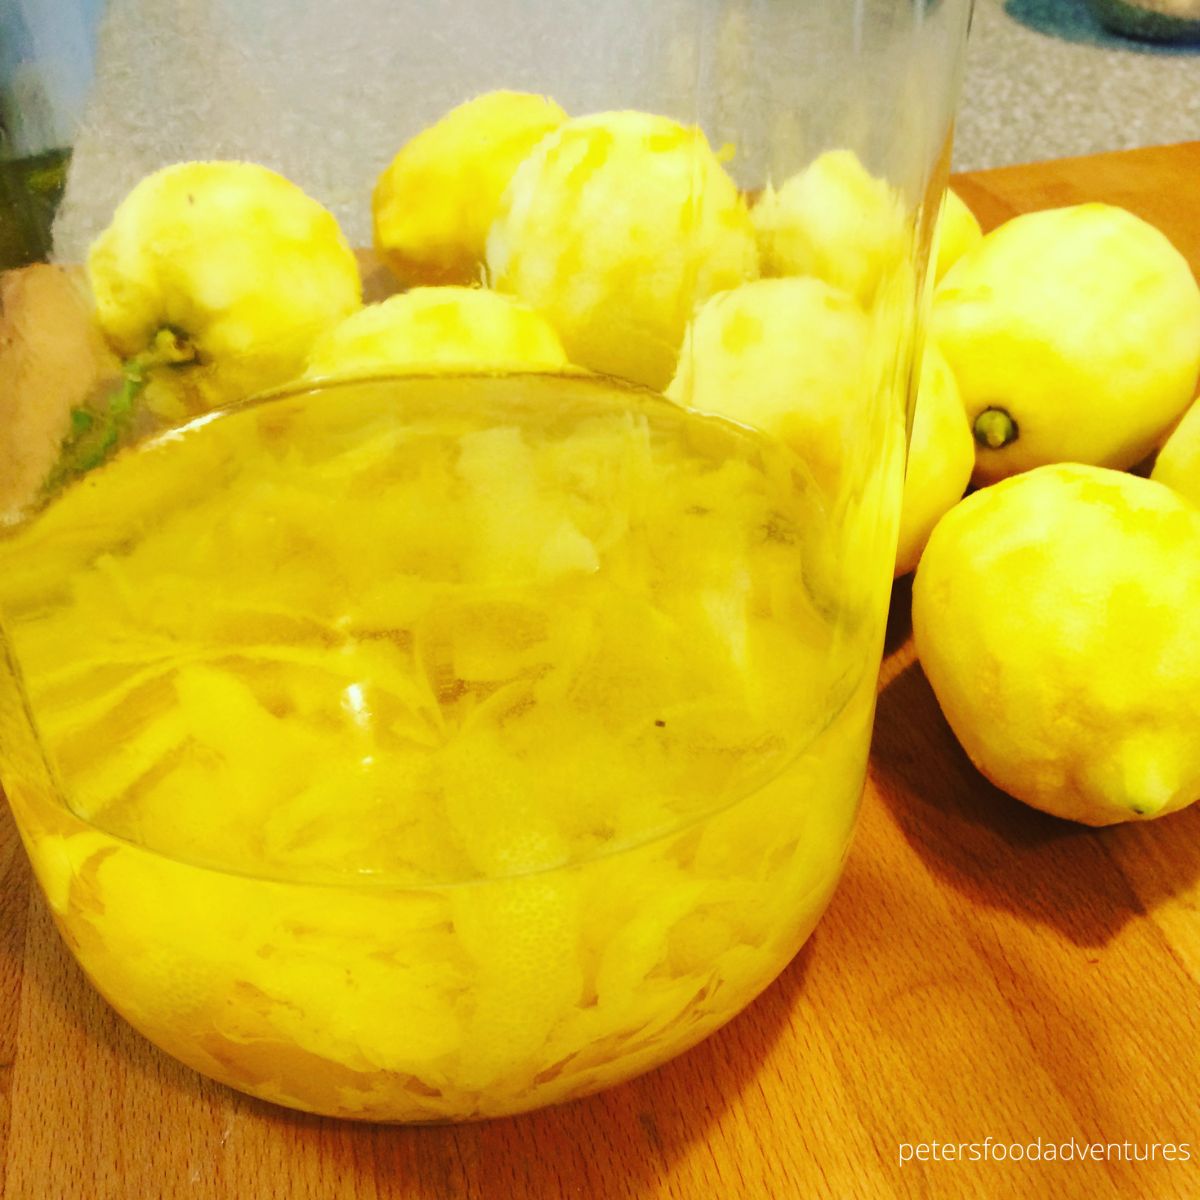 infused lemon peels in vodka